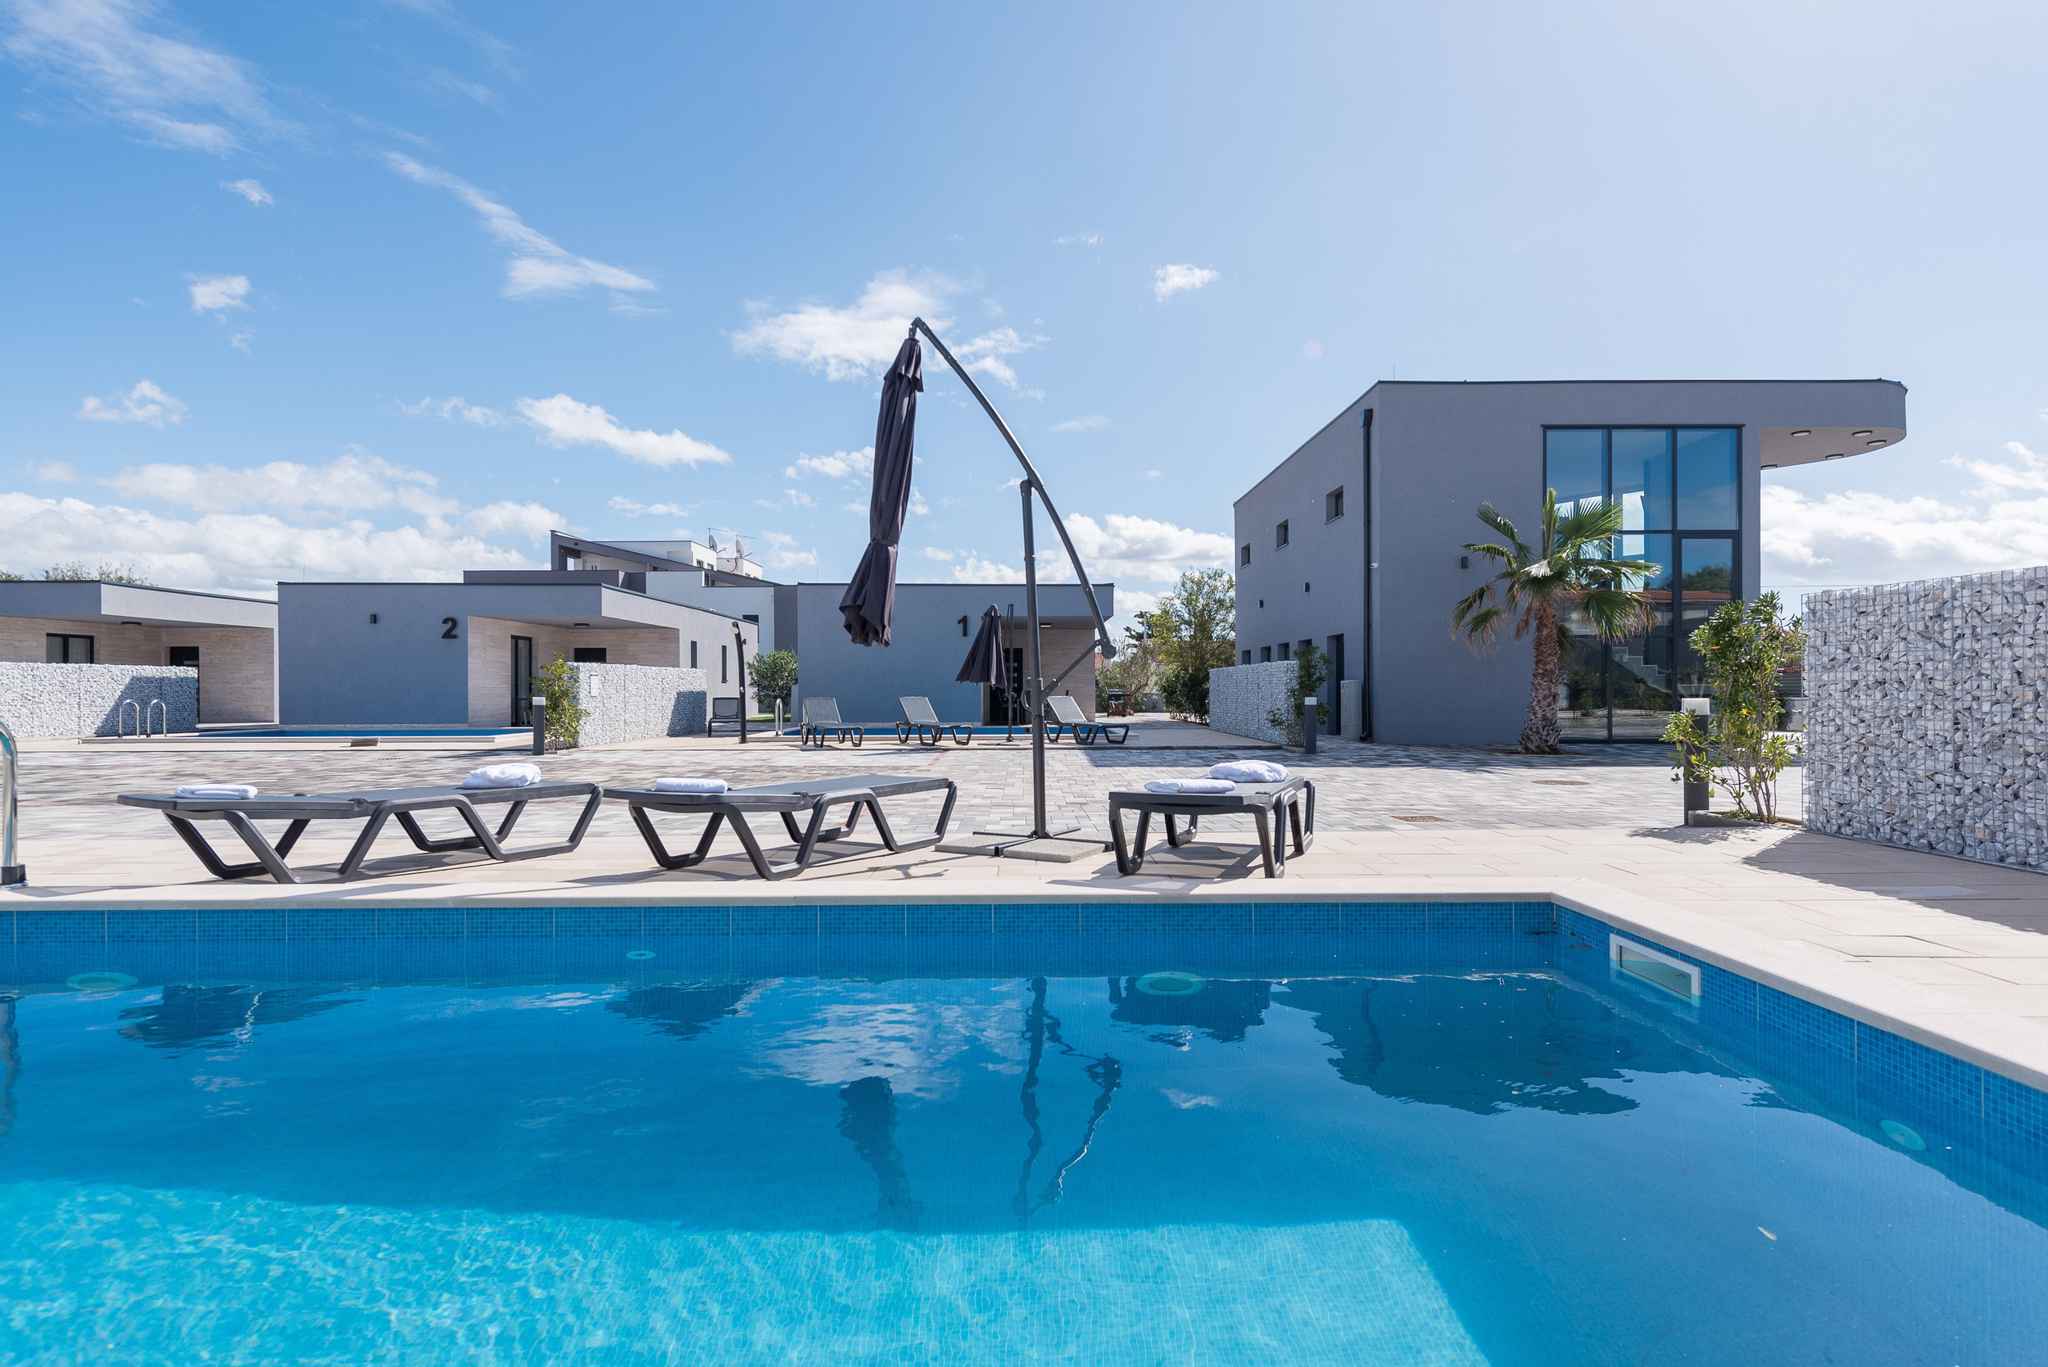 Villa mit Pool in einem Luxusresort Ferienhaus in Kroatien